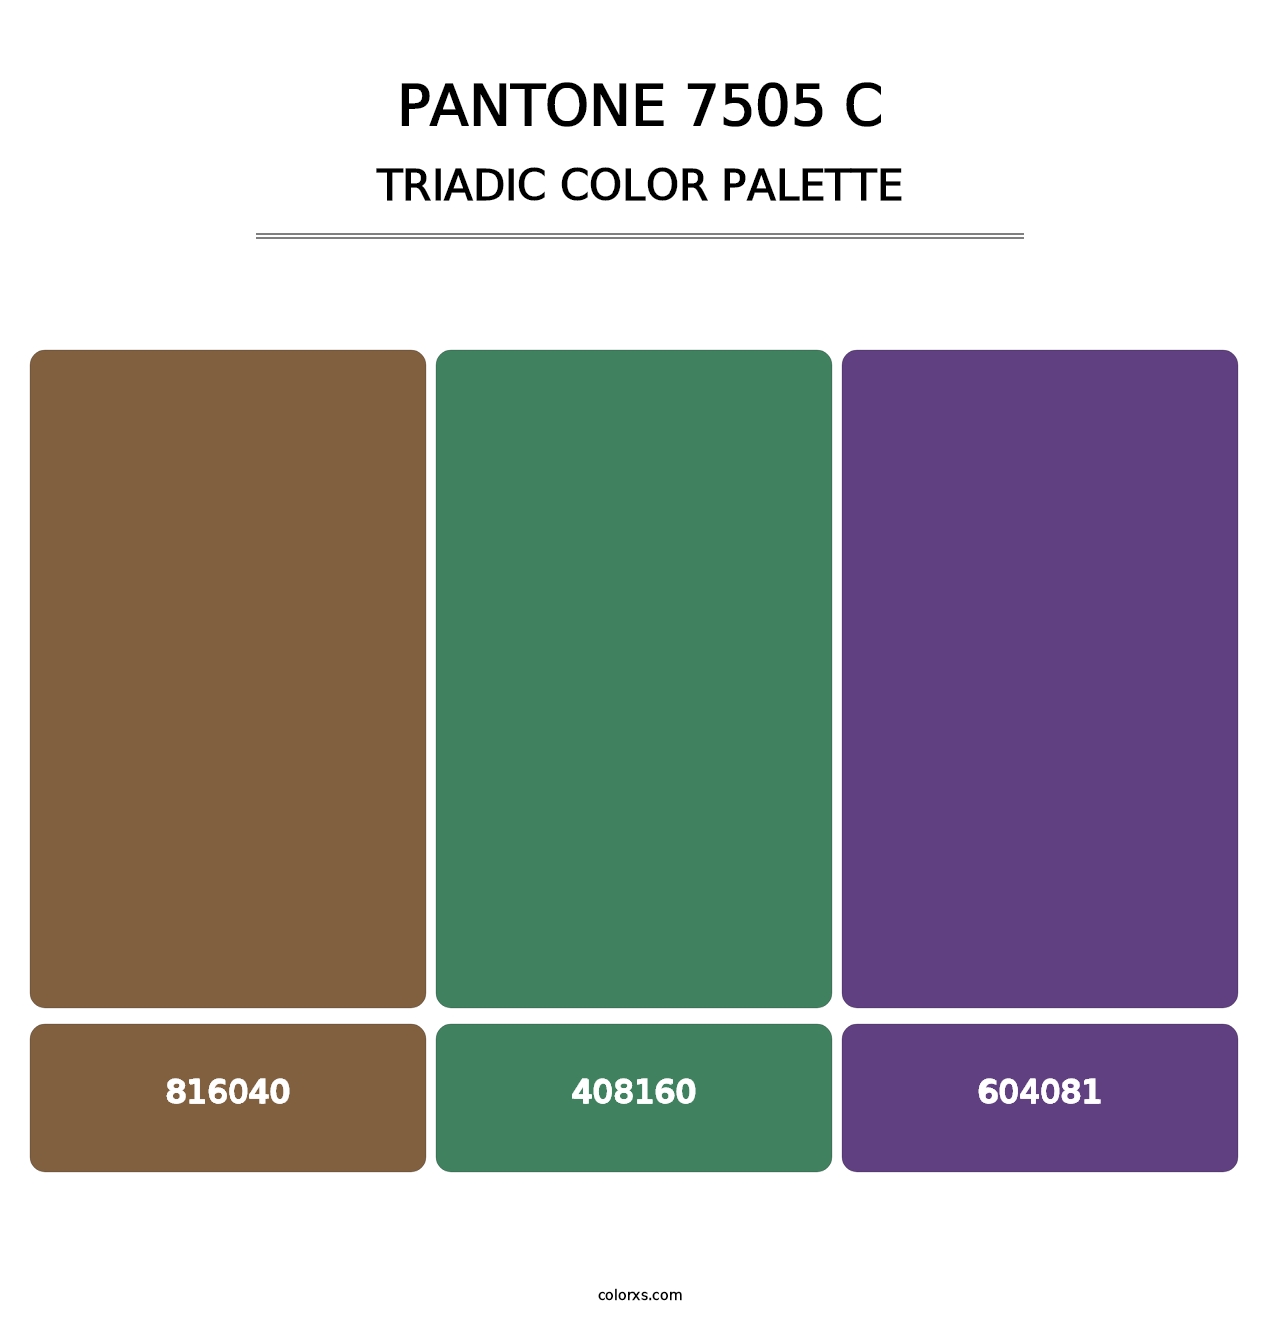 PANTONE 7505 C - Triadic Color Palette